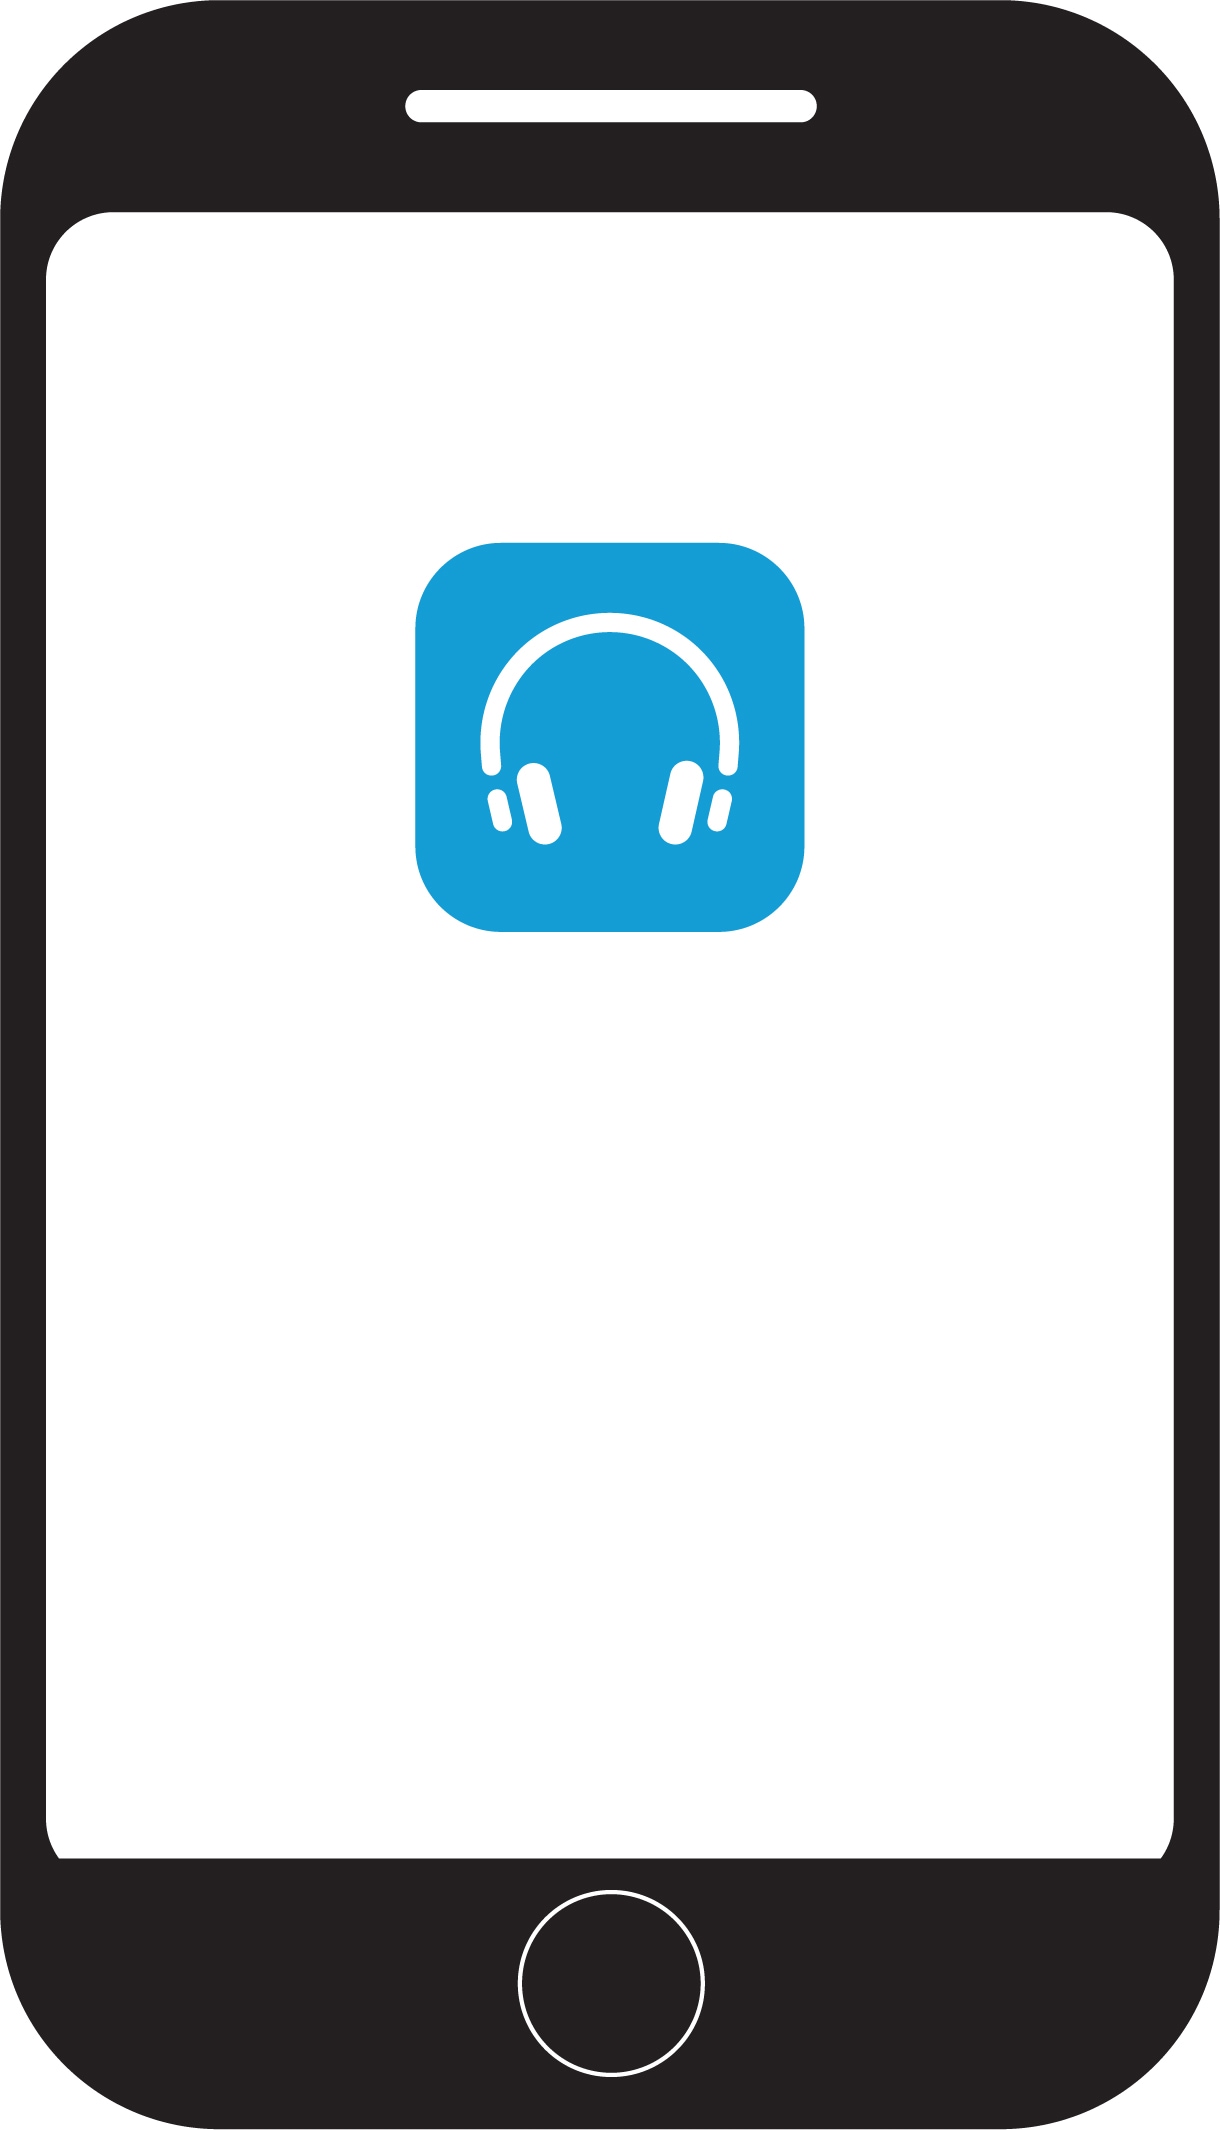 Logotip aplikacije Cisco Headsets na zaslonu mobilnega telefona